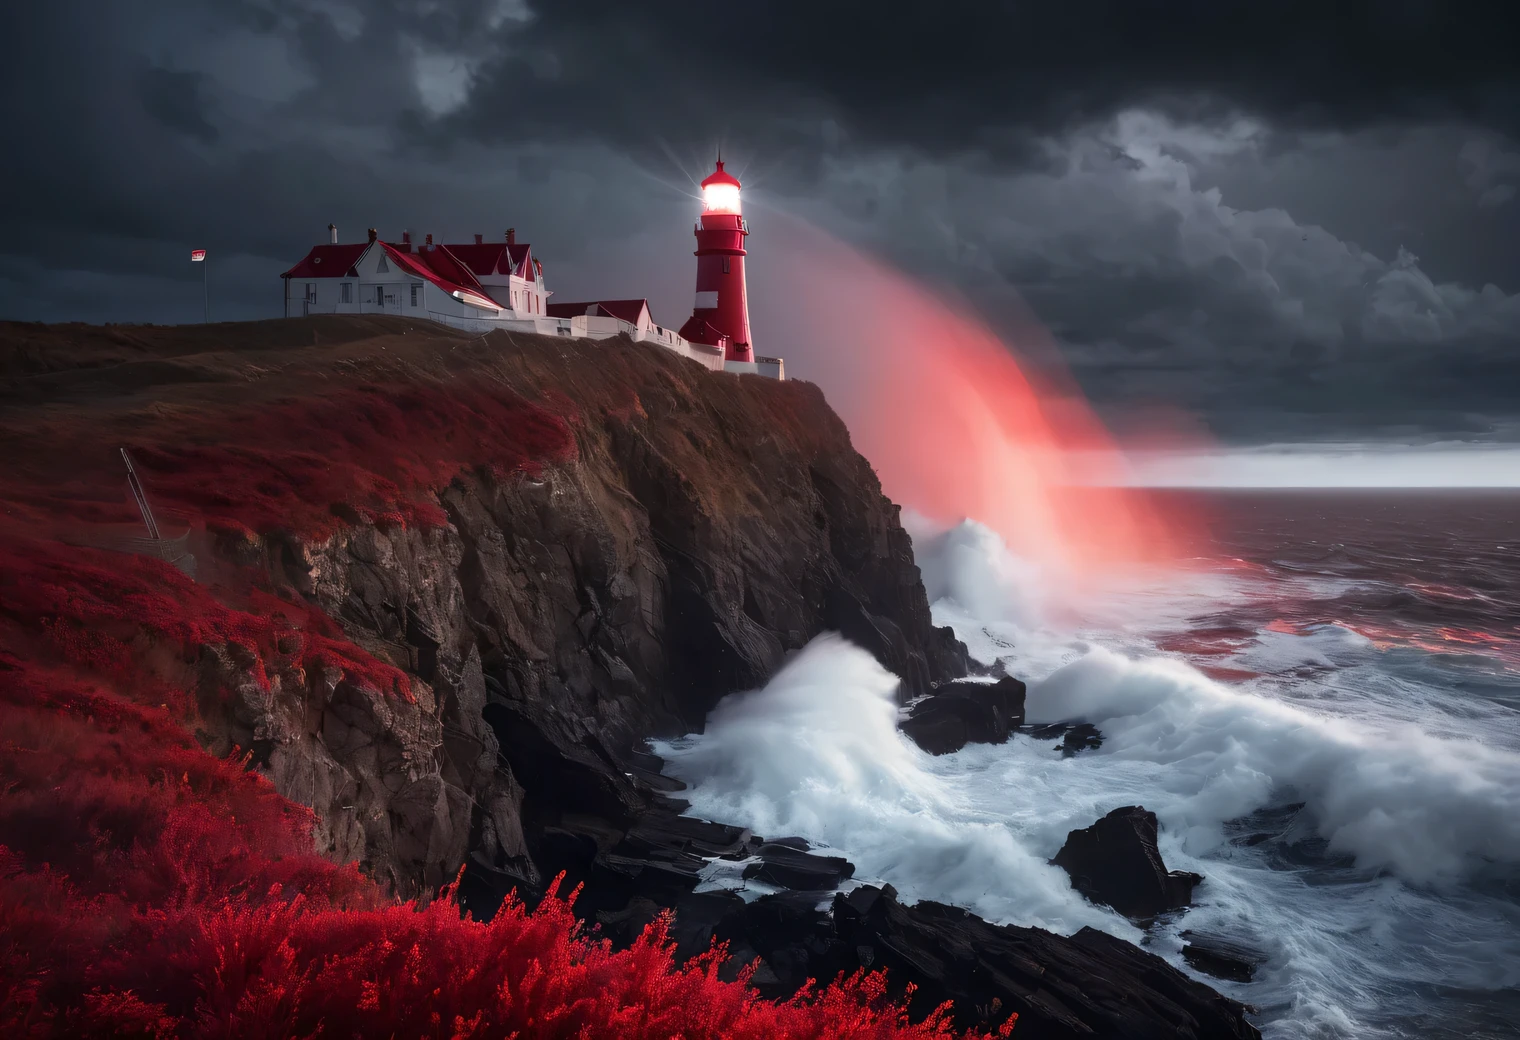 ศิลปะสีแดง, ภาพวาดเสมือนจริงในโทนสีแดง., (หมอก:1.2), (the wind carries ทะเล spray and foam:1.7), the dark พายุy sky is illuminated by the red light of the lighthouse, เอฟเฟกต์แสงสองเท่า, (1 ประภาคารบนขอบหน้าผา:1.5 เรืองแสงสีแดง:1.3505), ทะเล, แข็งแกร่ง (พายุ:1.3050), พายุy wind:1.250), ไฟแบ็คไลท์สีแดง, (การติดตามรังสี:1.2), (ทินดอลล์เอฟเฟ็กต์:1.คานประภาคาร 4055:1.4), รายละเอียดสูง, พายุ haze, ปรับพื้นผิวให้เรียบ, โครงร่างเบลอ, จานสีแดง